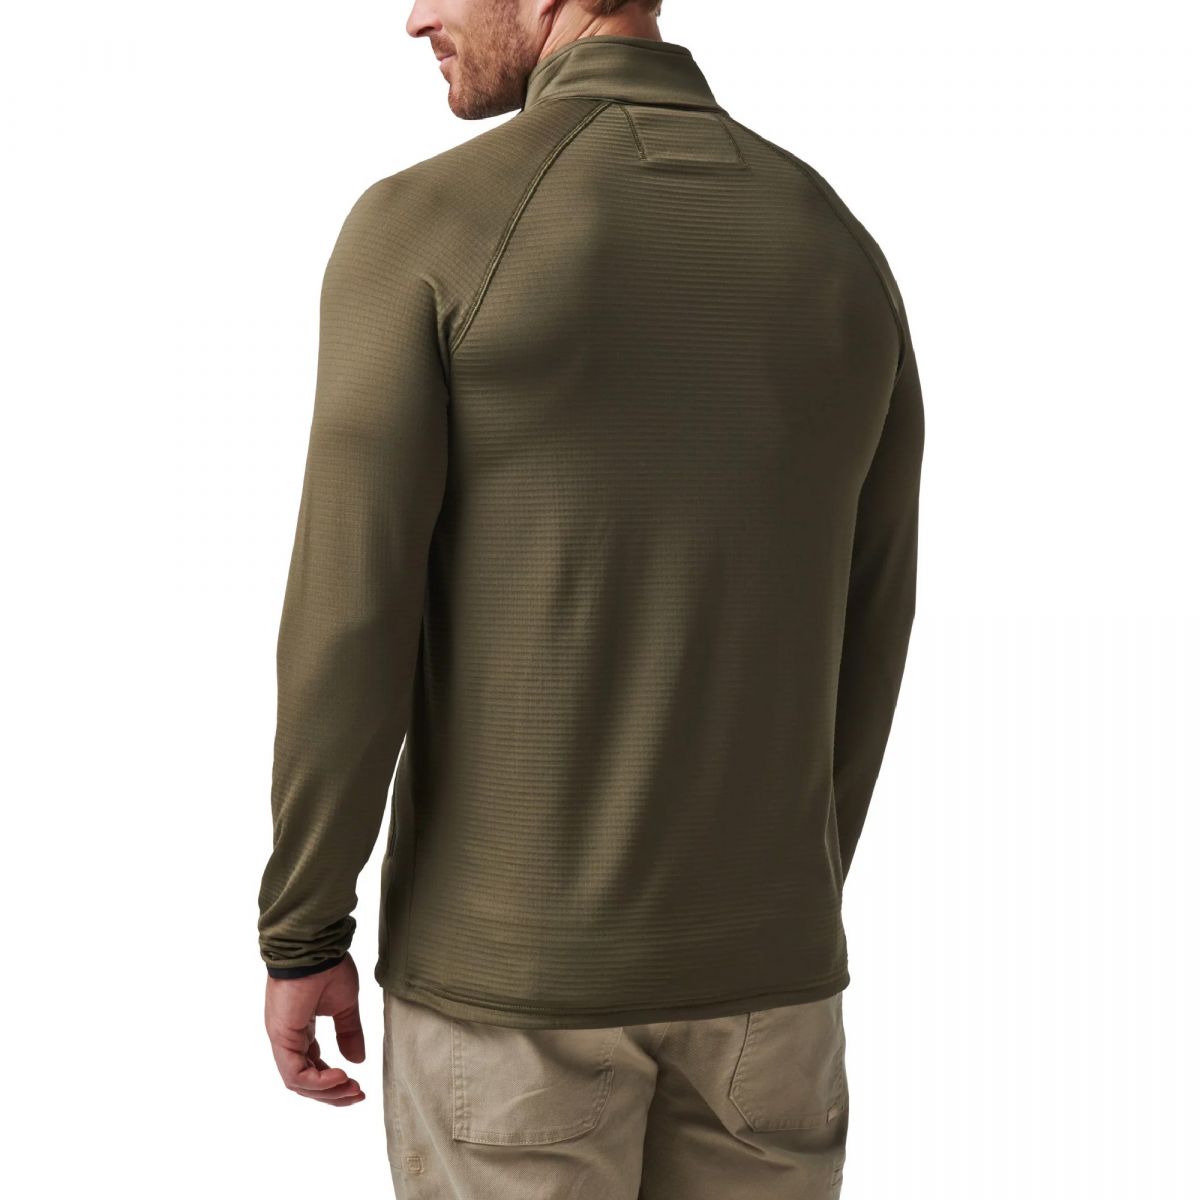 Куртка флисовая 5.11 Tactical® Stratos Full Zip. Олива. Размер XL. 2